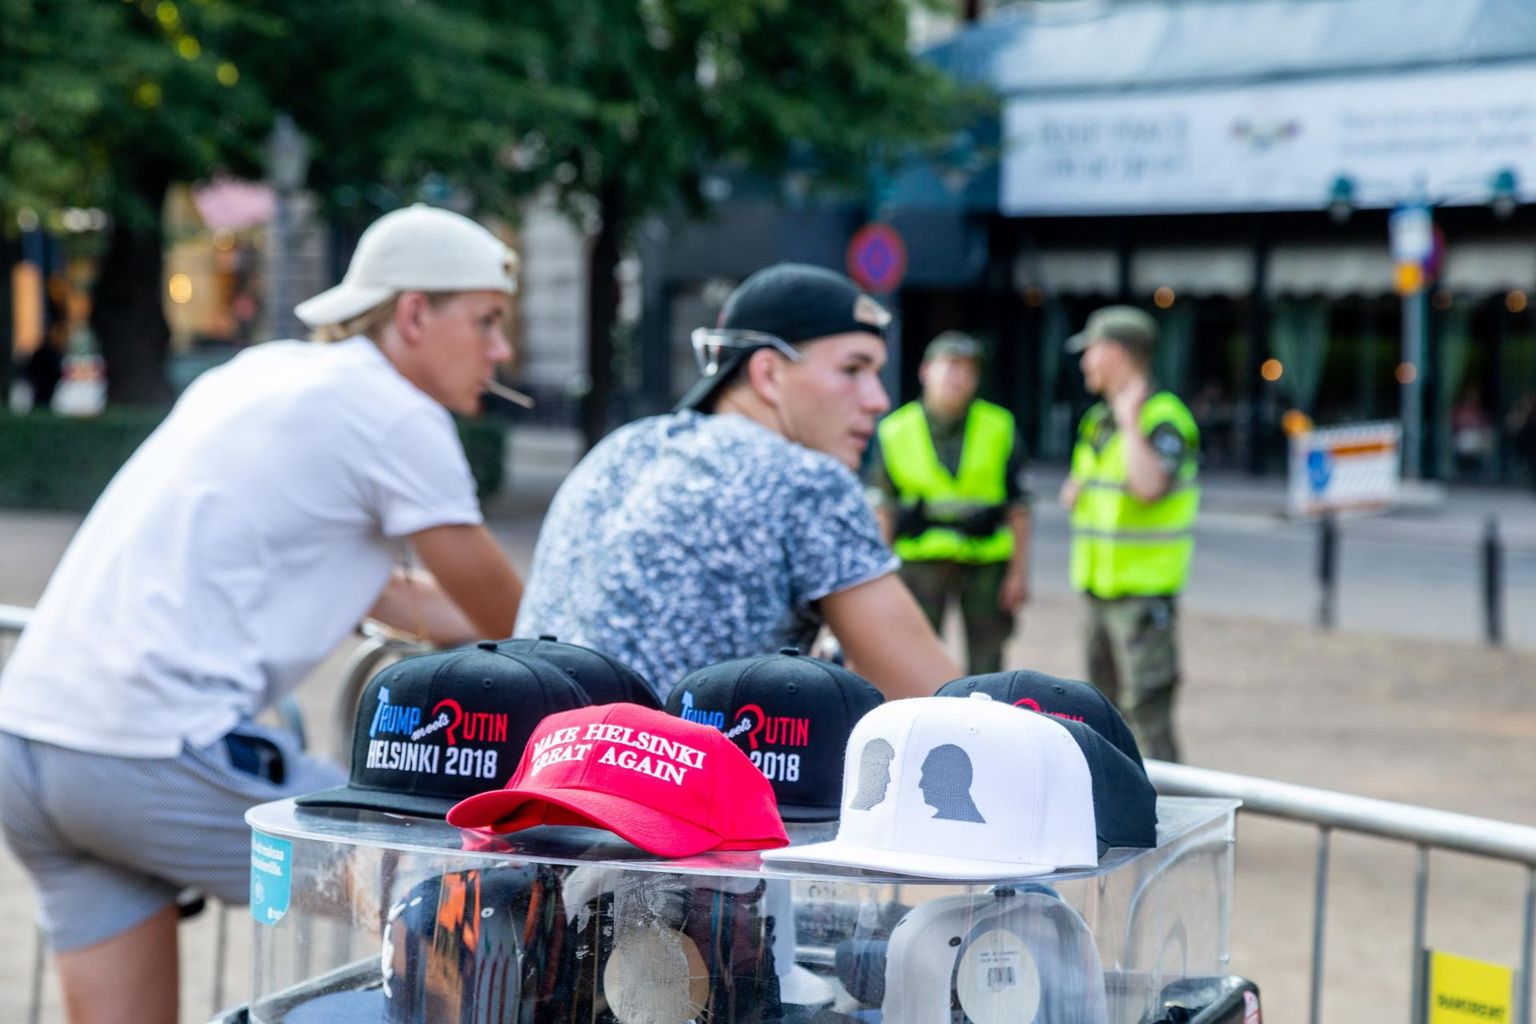 Helsingi tänavatel tegutsesid agaralt nokatsimüüjad, kelle pakutavat kaupa kaunistasid tippkohtumise peakangelased.